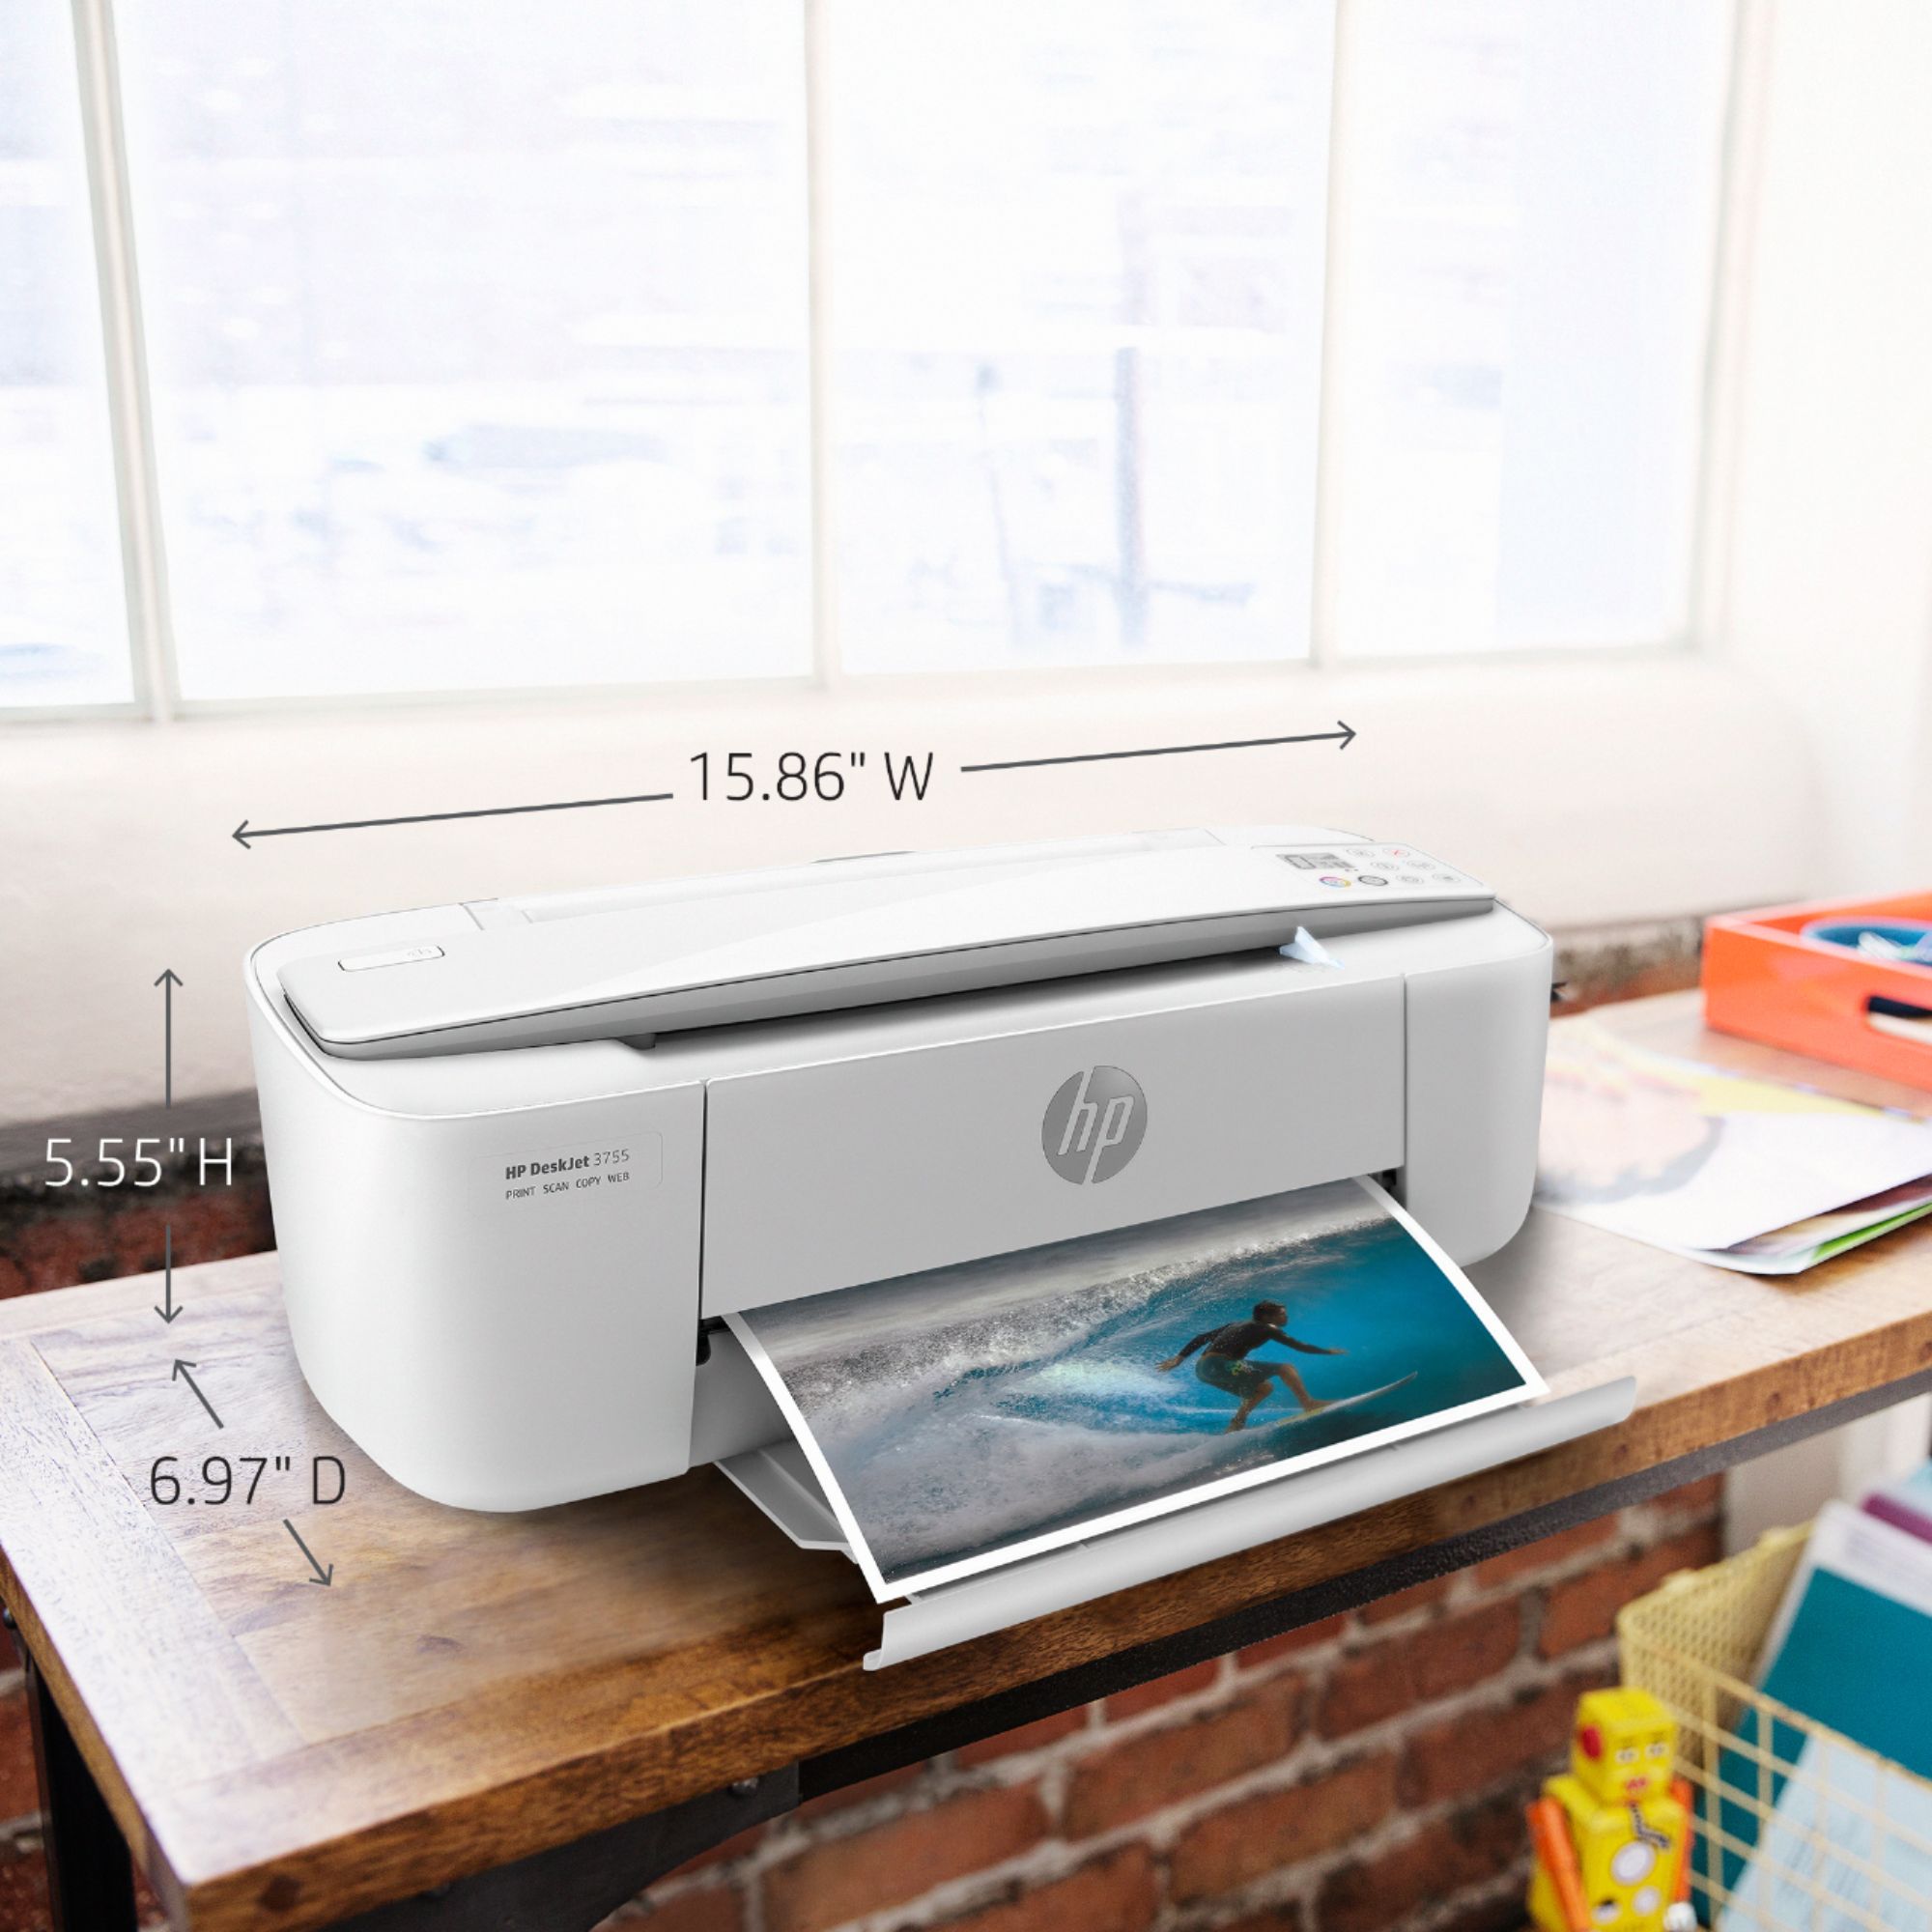 HP DeskJet 3755 Wireless All-In-One Instant Ink Ready Inkjet Printer Stone Best Buy